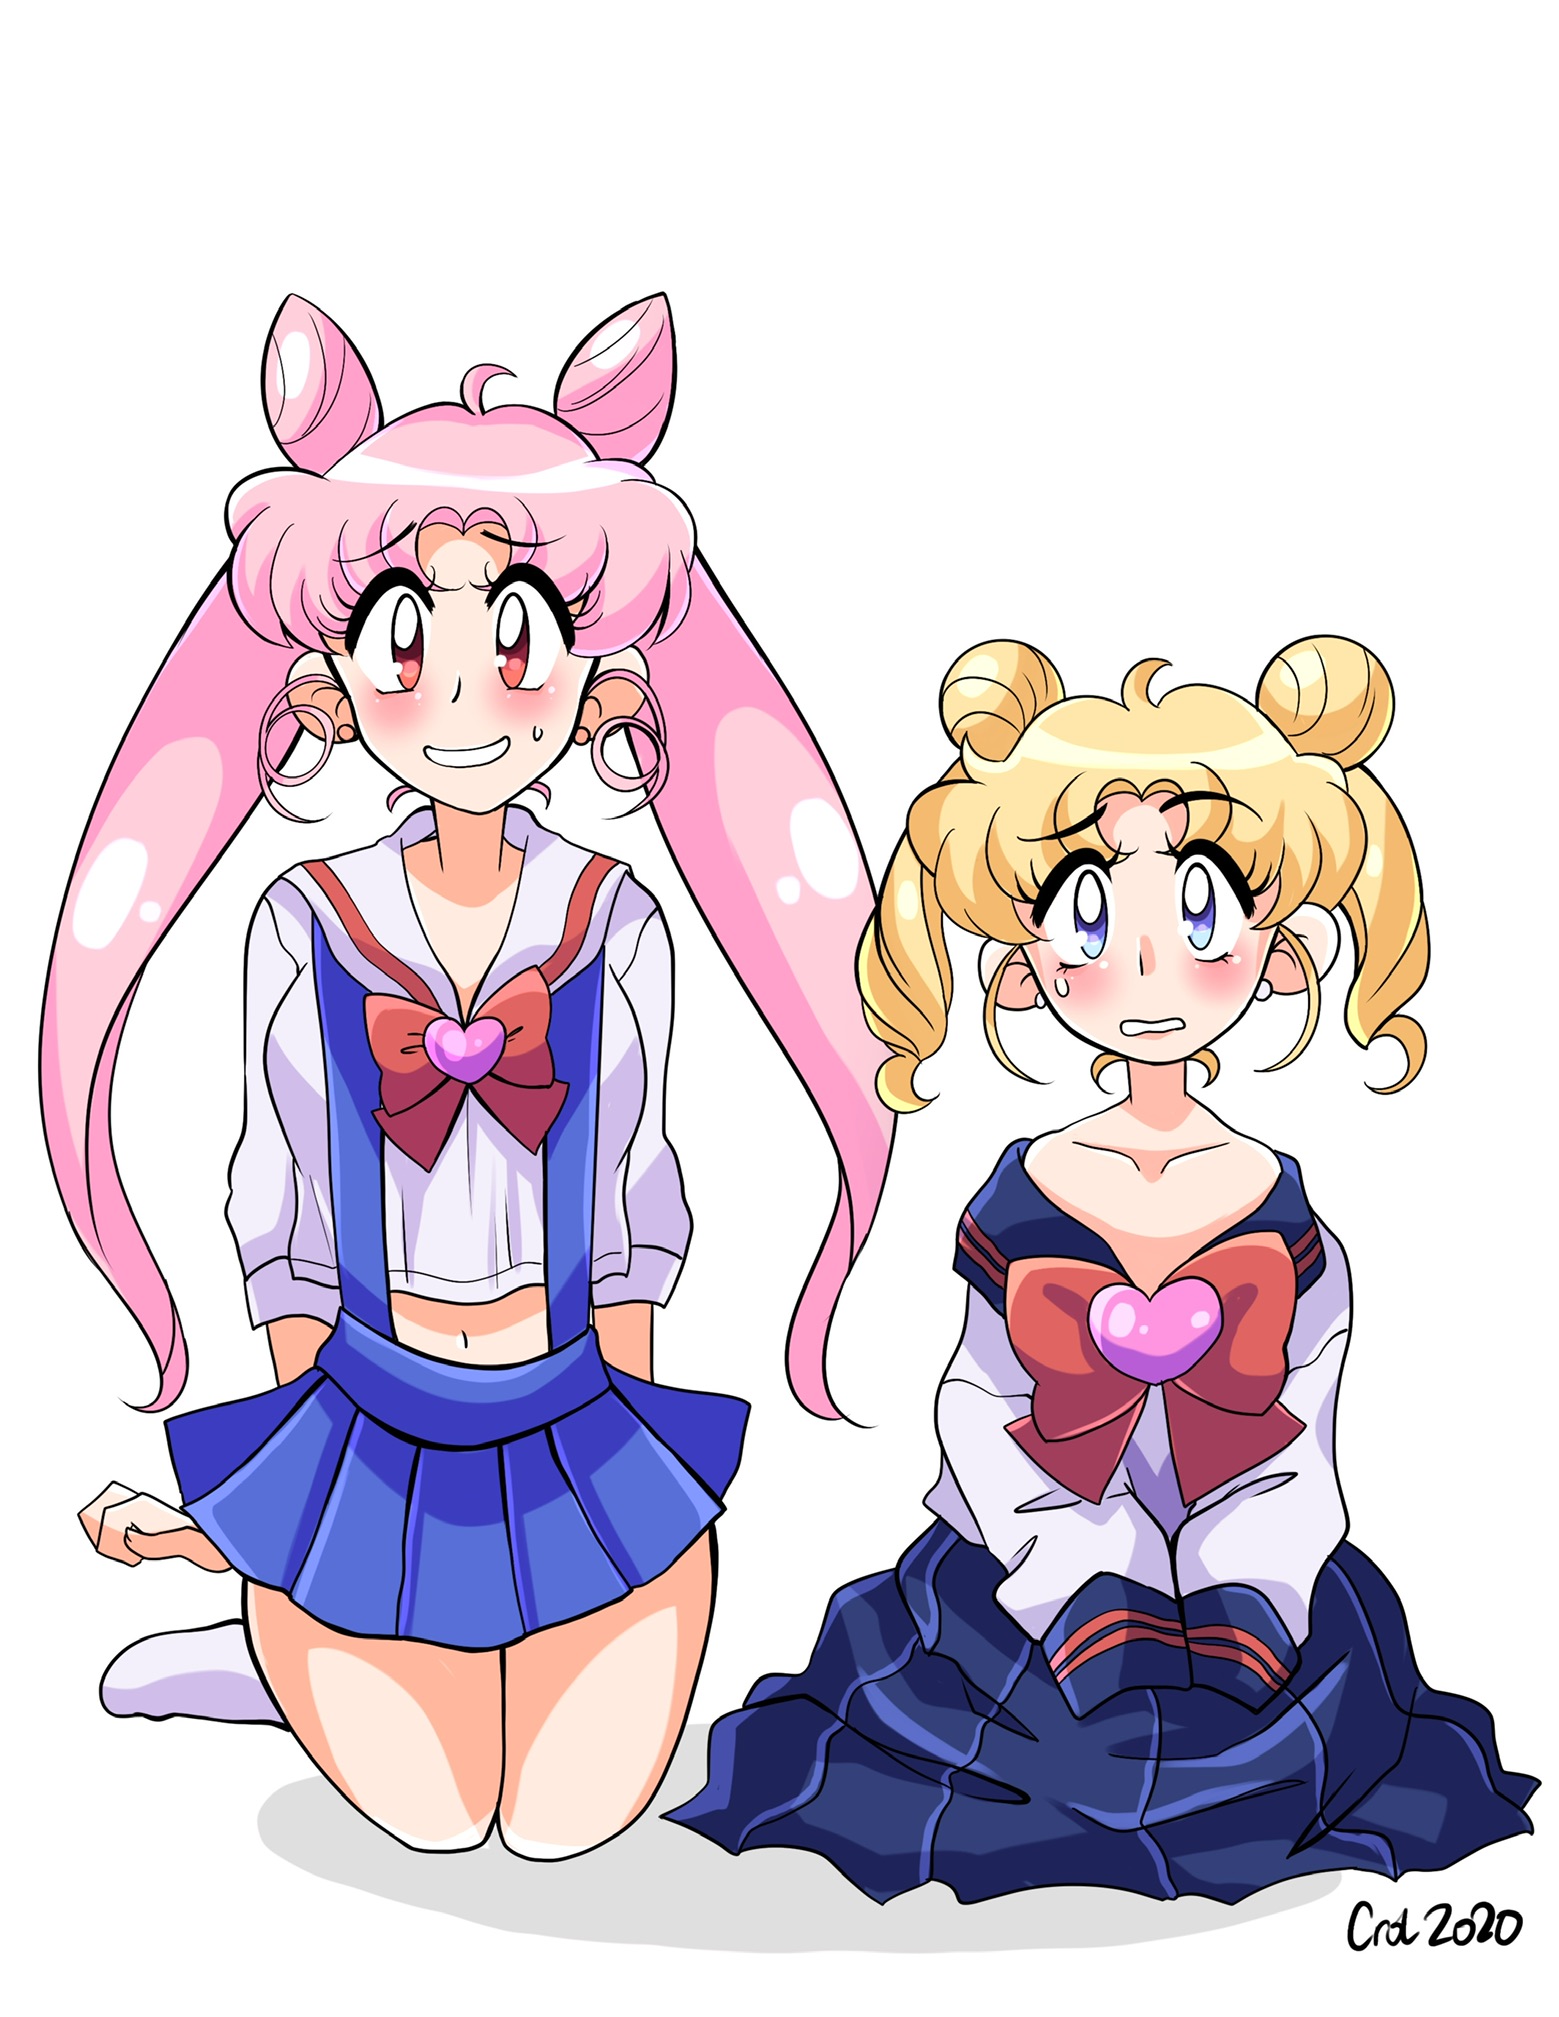 Với bộ đồ thật đẹp và sức mạnh đáng kinh ngạc, cô bé Tình Yêu thứ hai sẽ đi cùng với Sailor Moon chiến đấu chống lại những kẻ thù đang tìm cách chiếm đoạt trái tim con người. Hãy cùng quan sát và cảm nhận sức mạnh của cô bé trong thế giới phép thuật này.